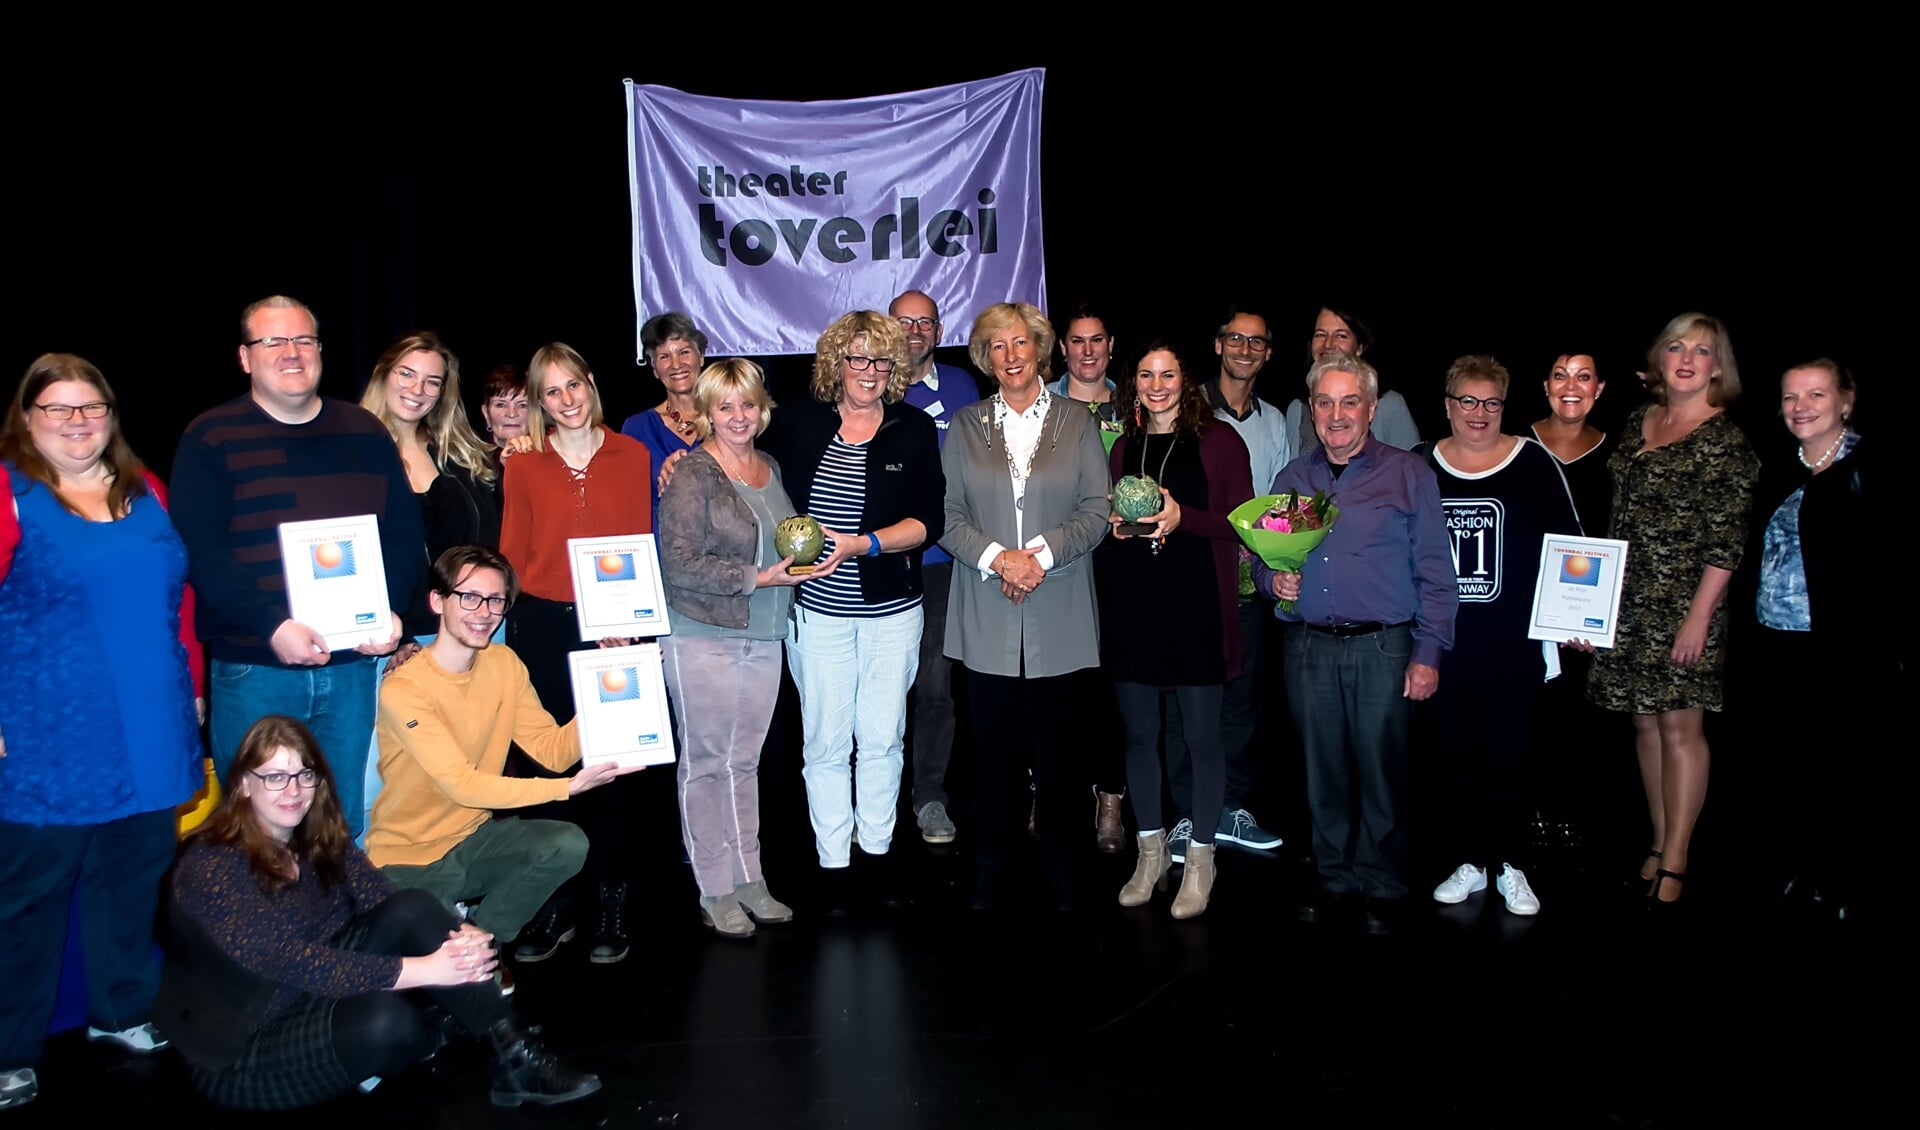 Alle prijswinnaars samen met burgemeester Driessen, die de publiekprijzen uitreikte, de juryleden en organisatoren van het Toverbal Festival. De winnaressen van de hoofdprijzen staan links en recht van Driessen met hun Toverbaltrofeeën. 